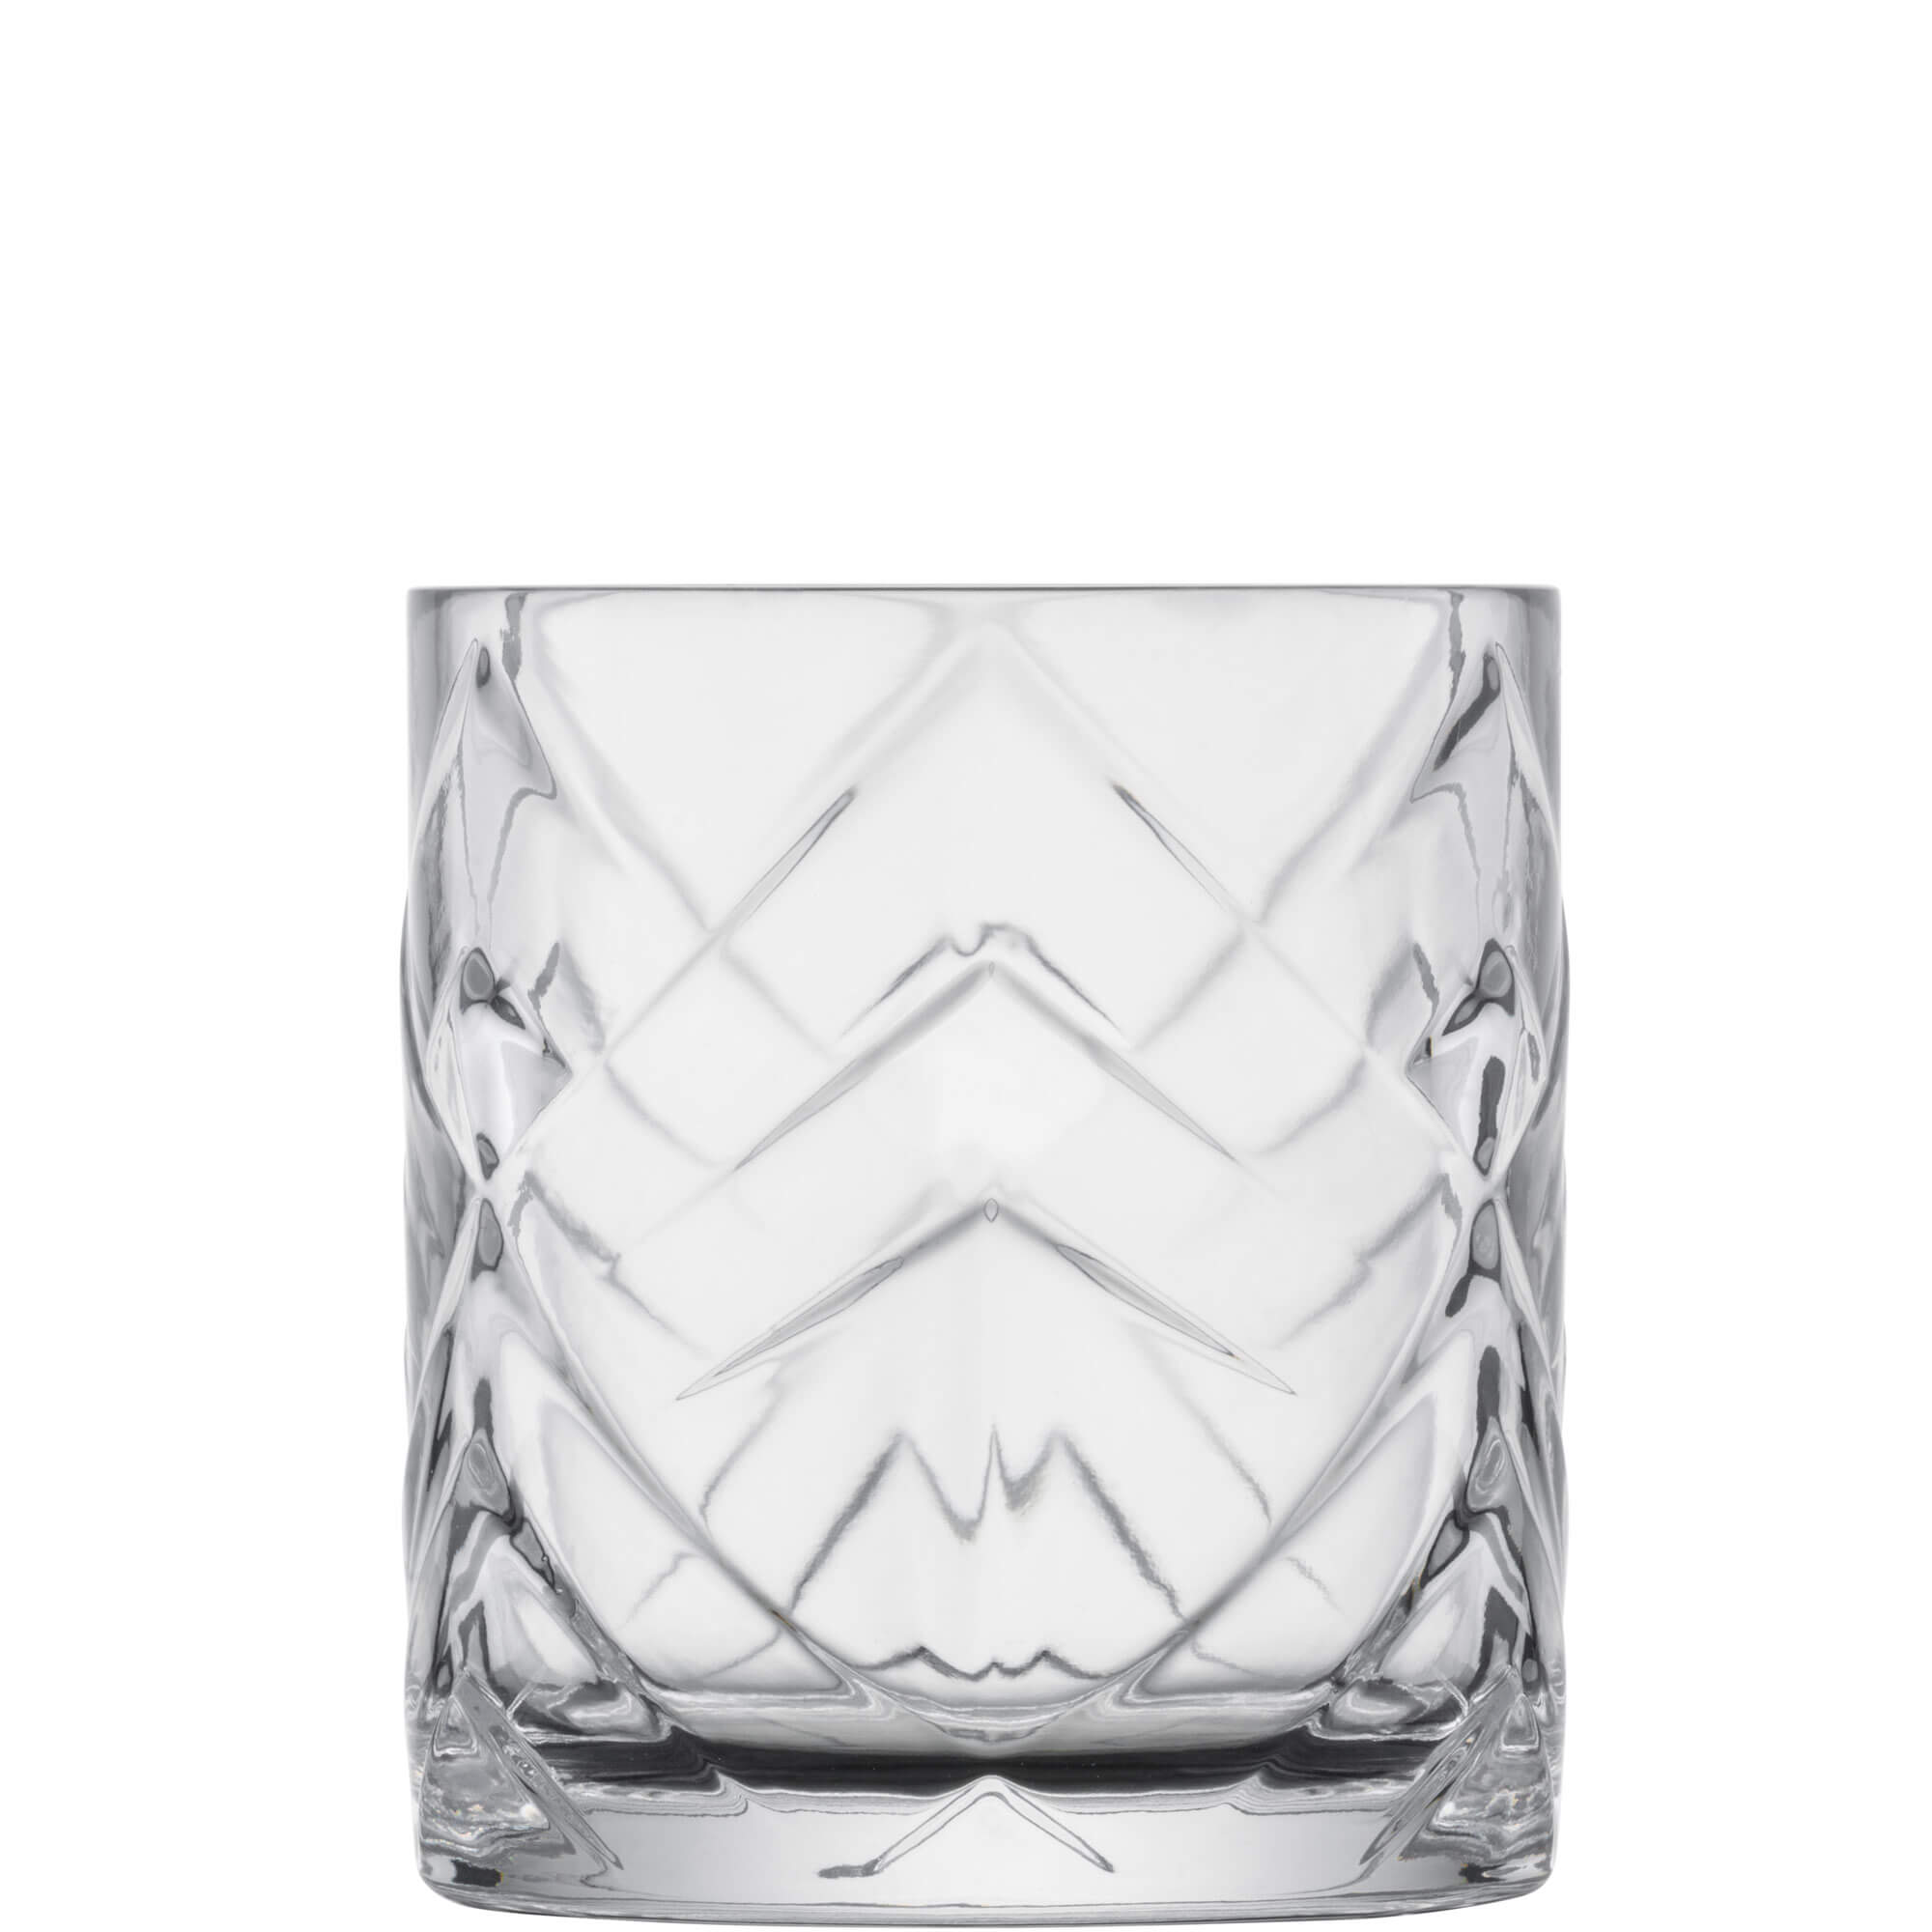 Whiskyglas Fascination, Zwiesel Glas - 343ml (1 Stk.)